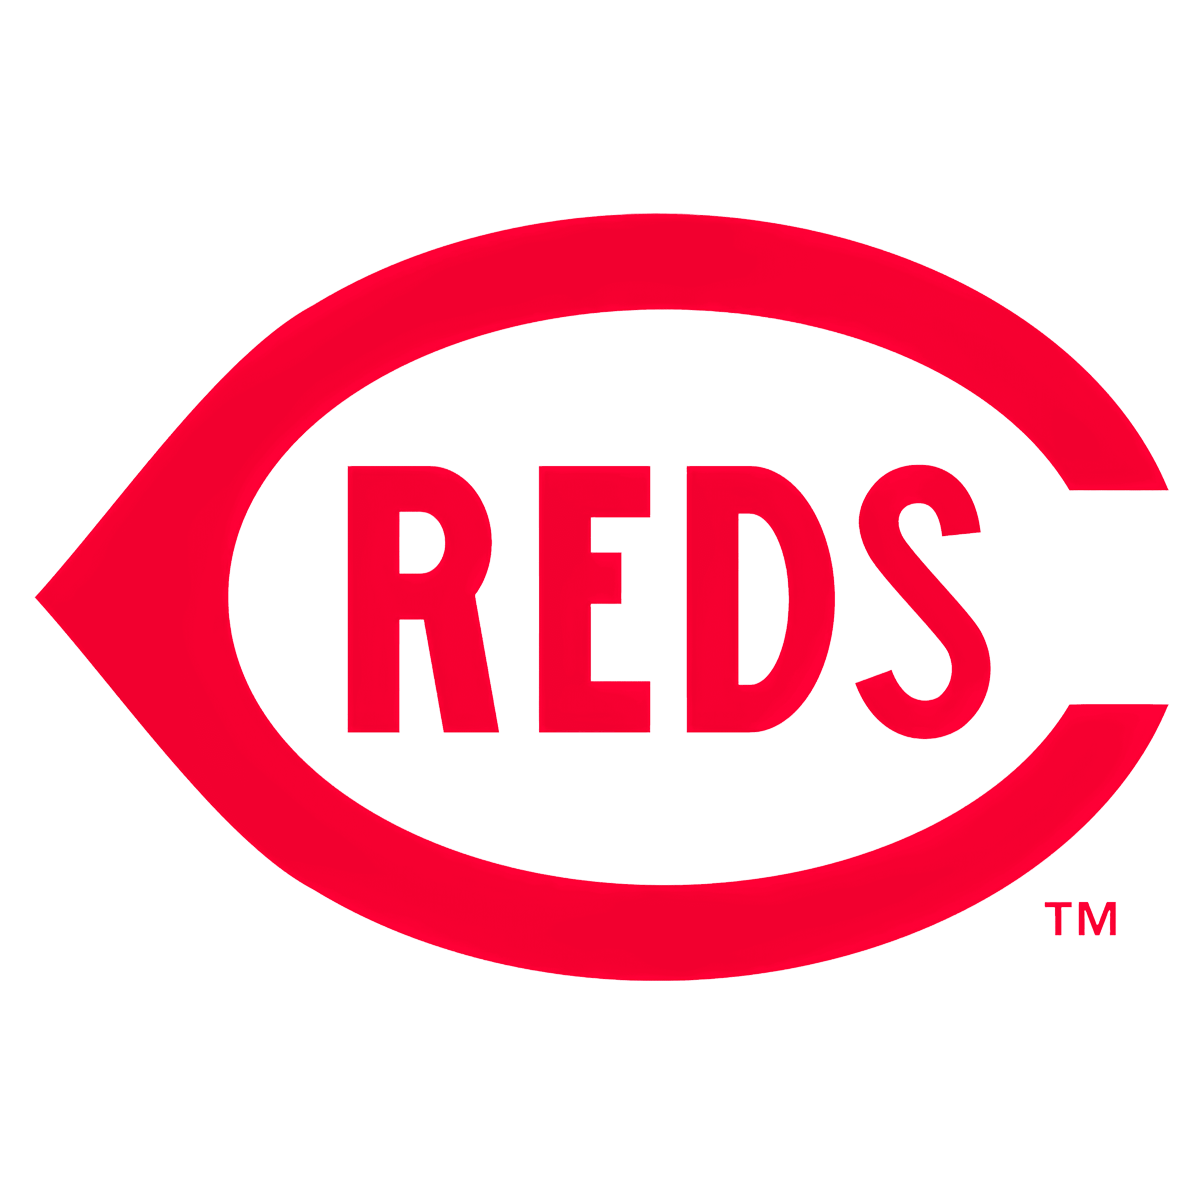 Cincinnati Reds Logo 1915-1919